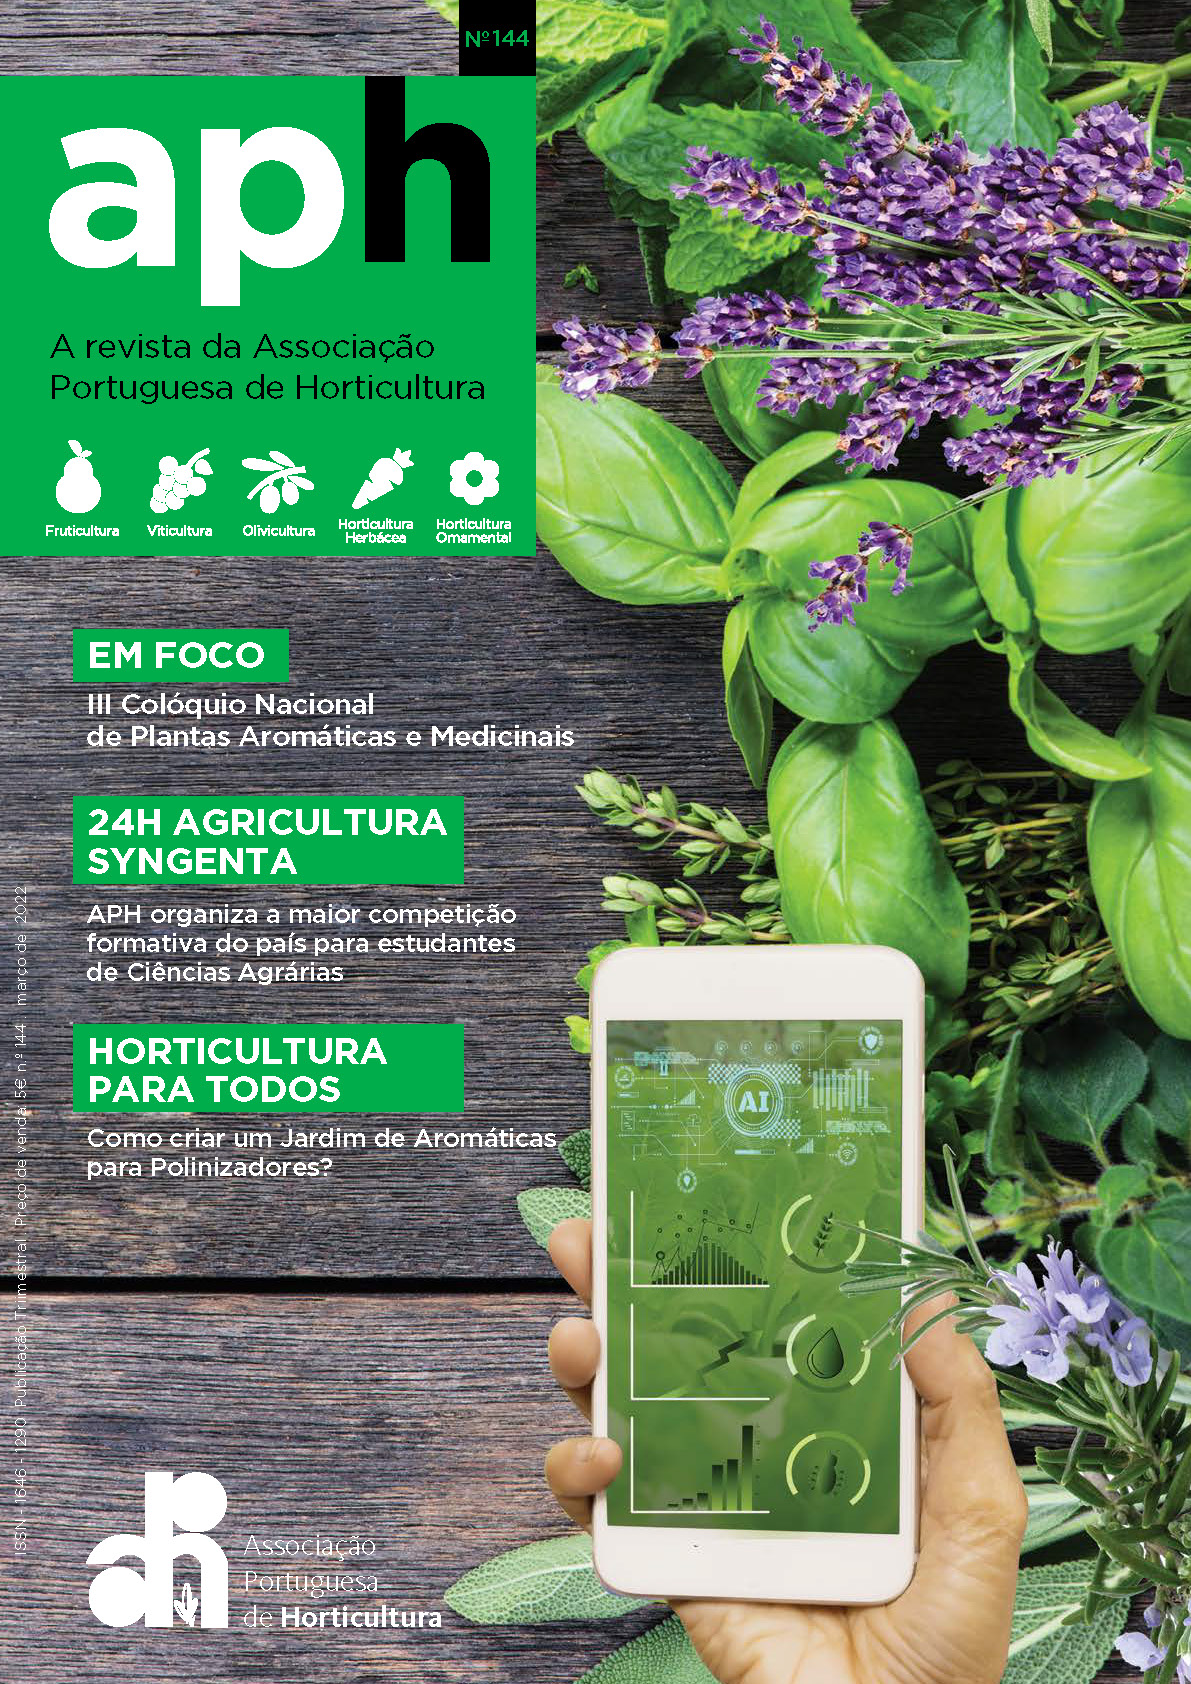 Plantas Aromáticas e Medicinais e Agricultura 4.0 em destaque na Revista da APH